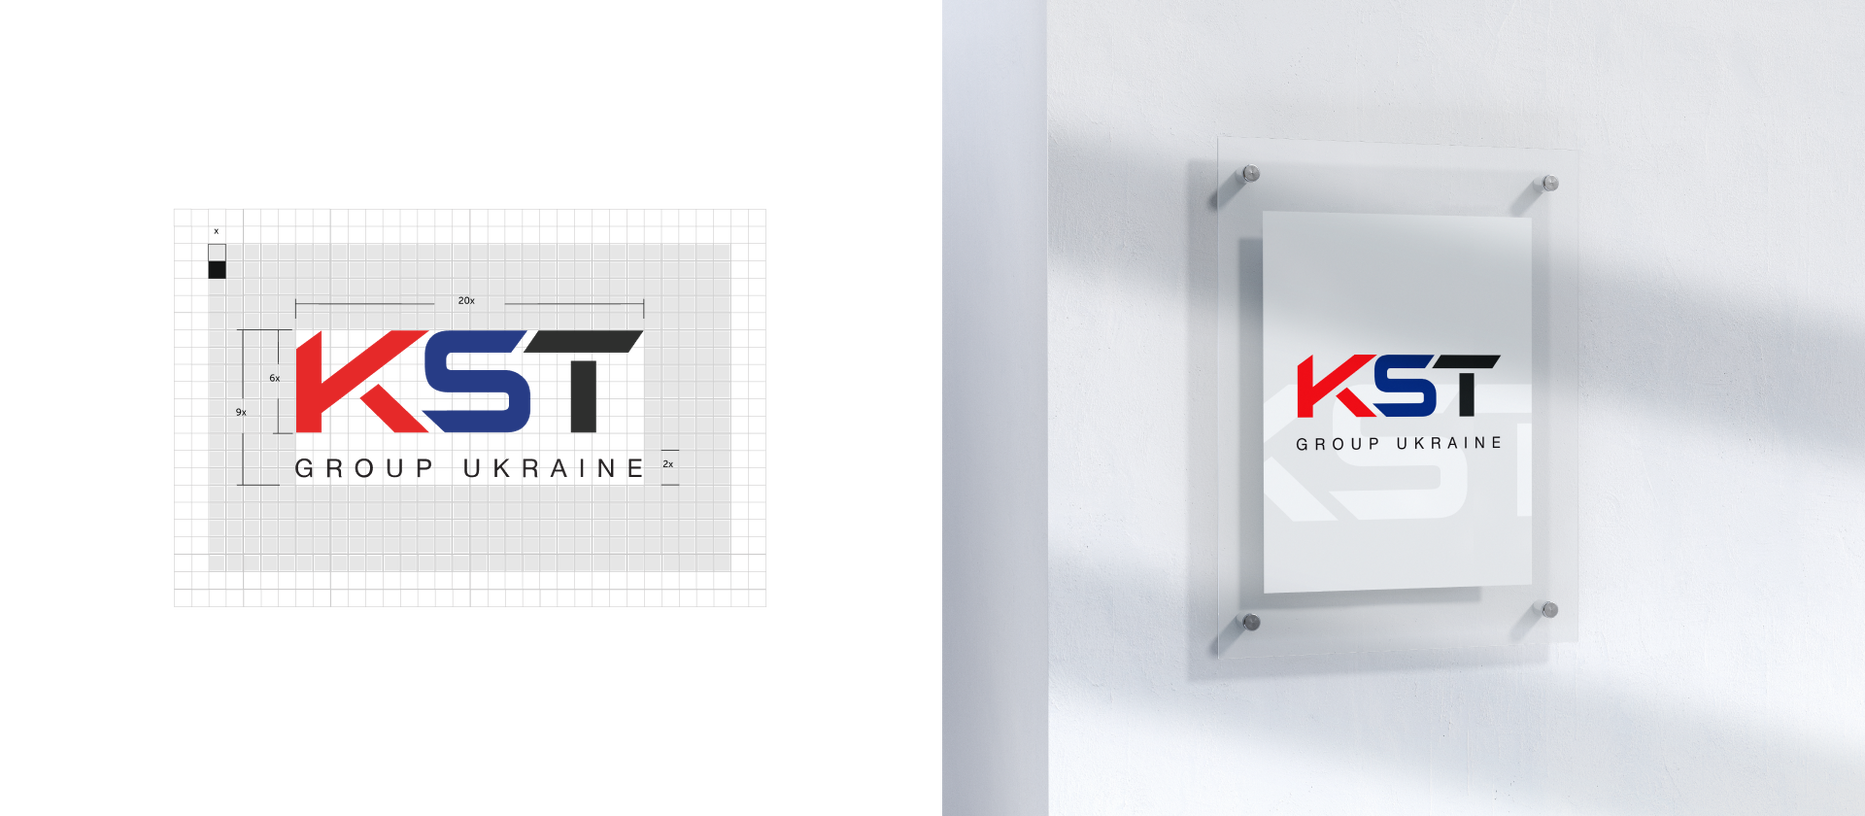 Зміцнення позицій KST GROUP на ринку. Редизайн логотипу, розробка фірмового стилю та маркетинг-кіт — Rubarb - Зображення - 5